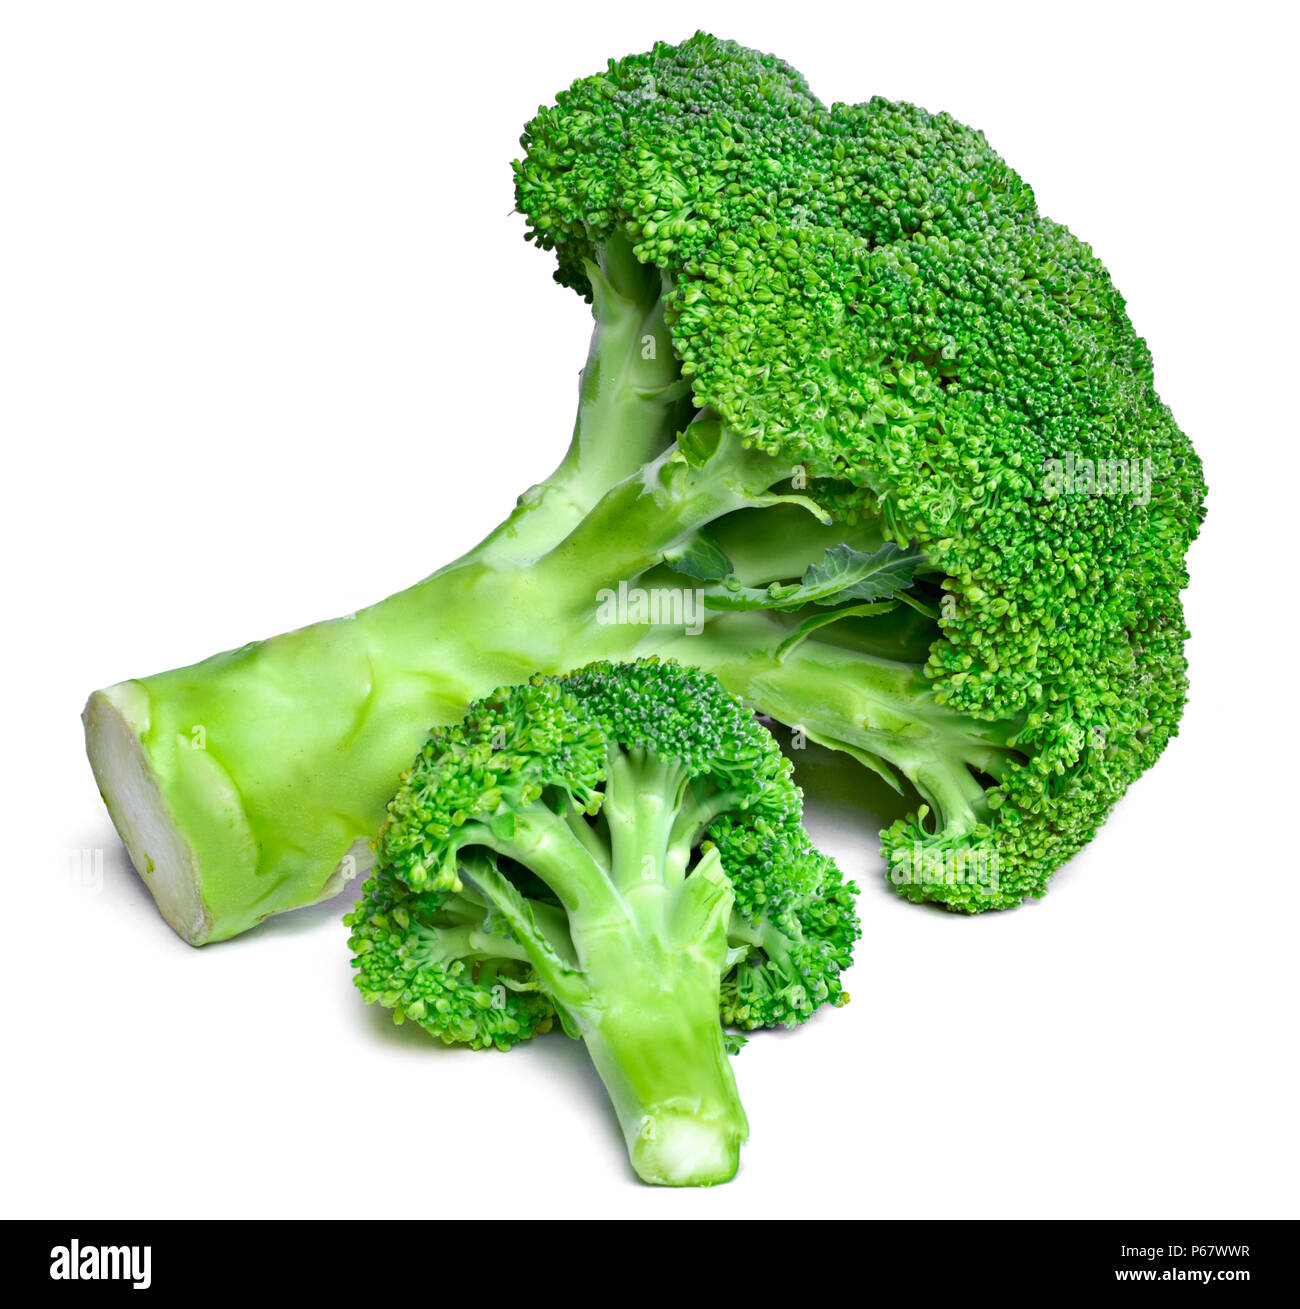 Frisches Grün Brokkoli, auf weißem Hintergrund. Reif, Gemüse, gesunde Ernährung. Brokkoli, kochen Zutat mit Vitaminen und wenig Kalorien. Stockfoto